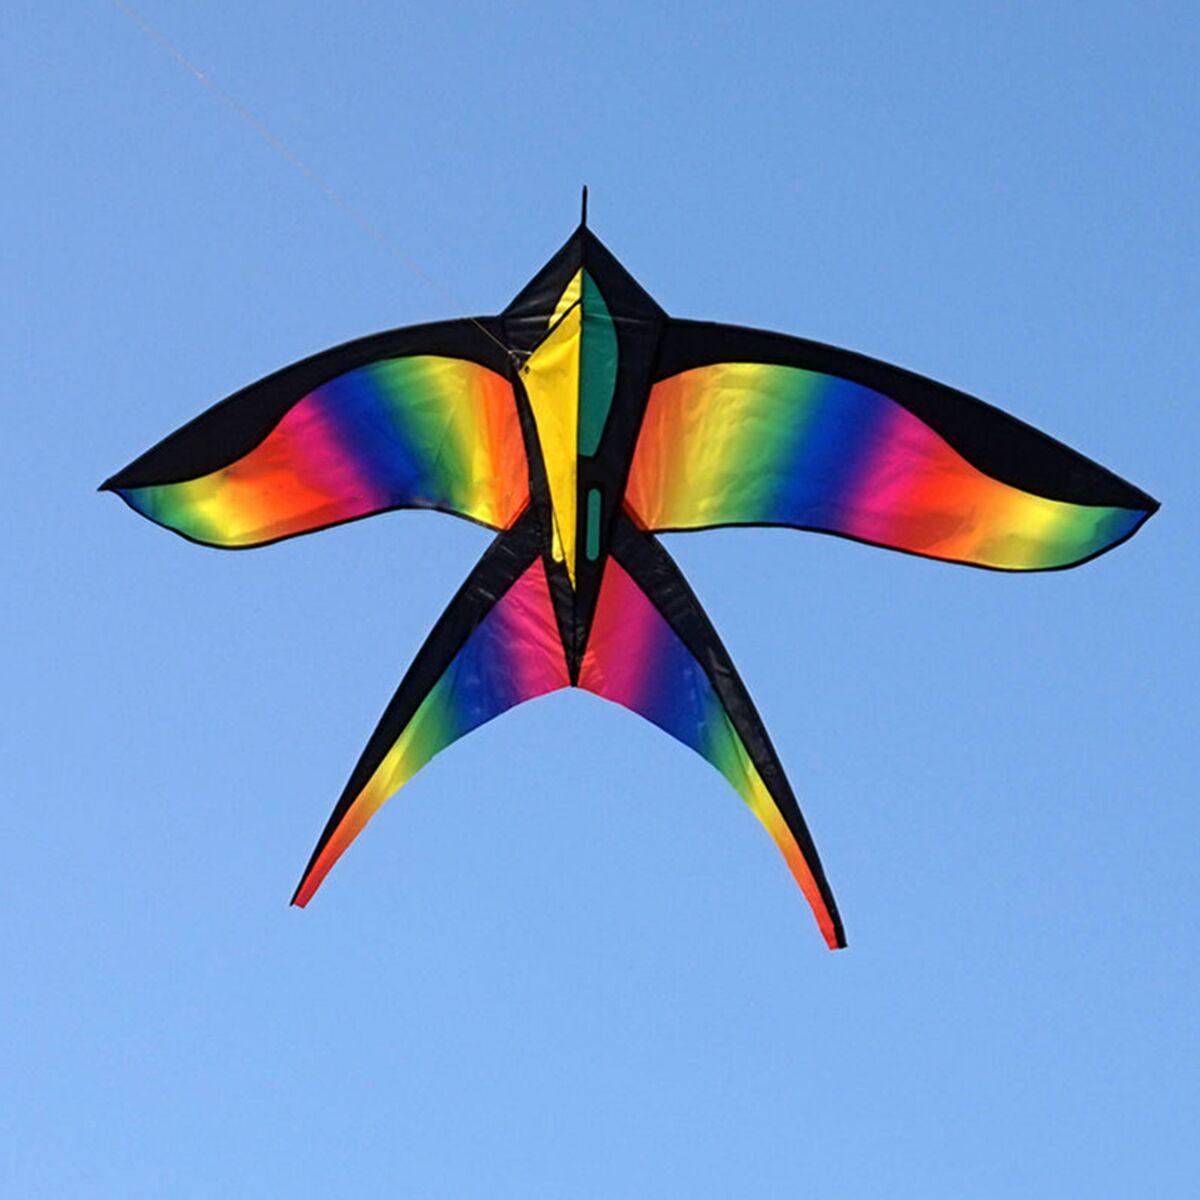 68in Swallow Kite Bird Kites Single Line Outdoor Fun Sports Toys Delta For Kids